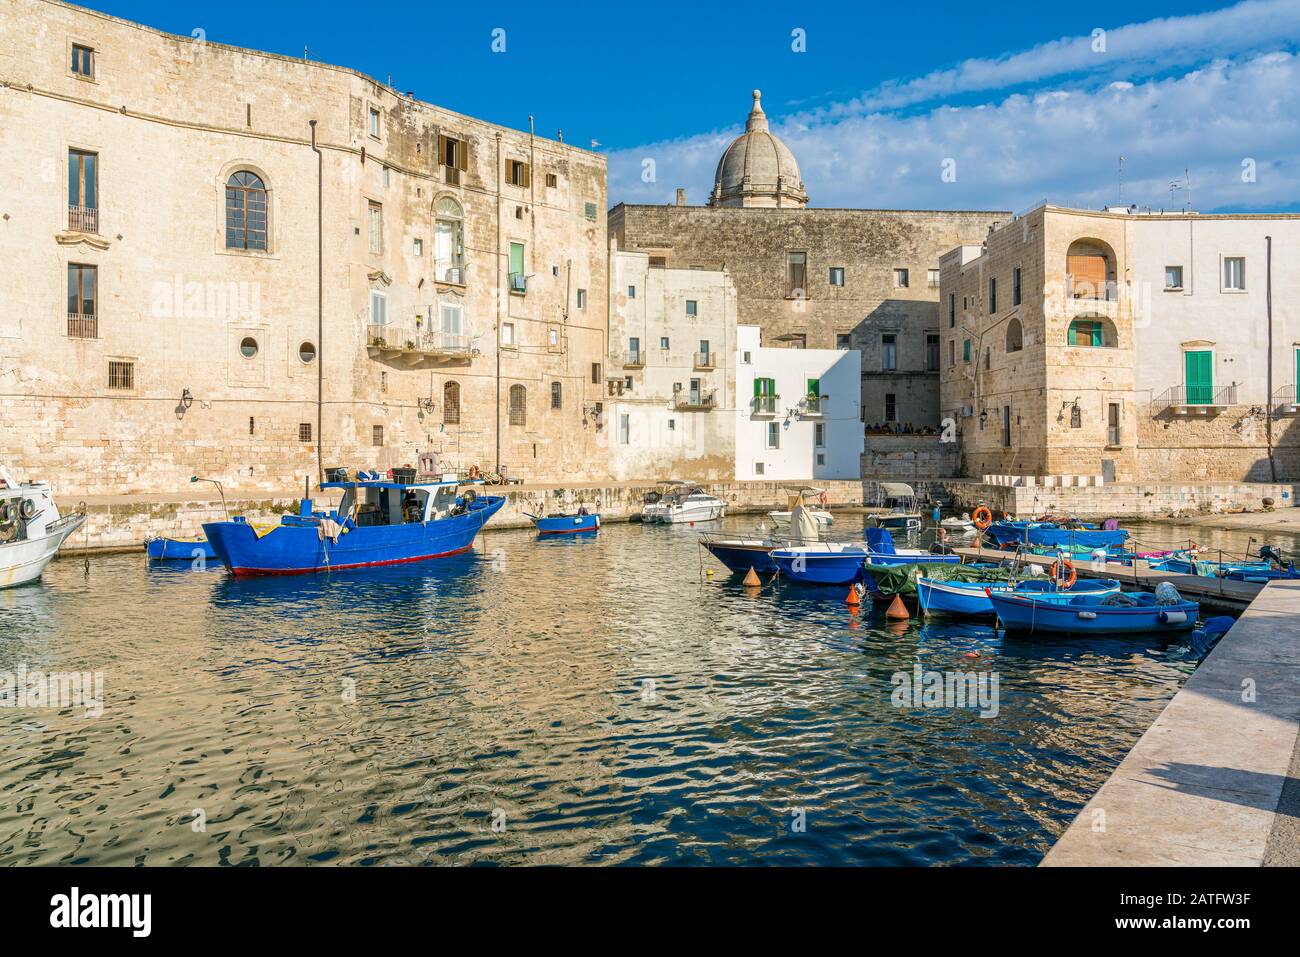 Monopoli und sein schöner alter Hafen, Provinz Bari, Apulien (Apulien), Süditalien. Stockfoto